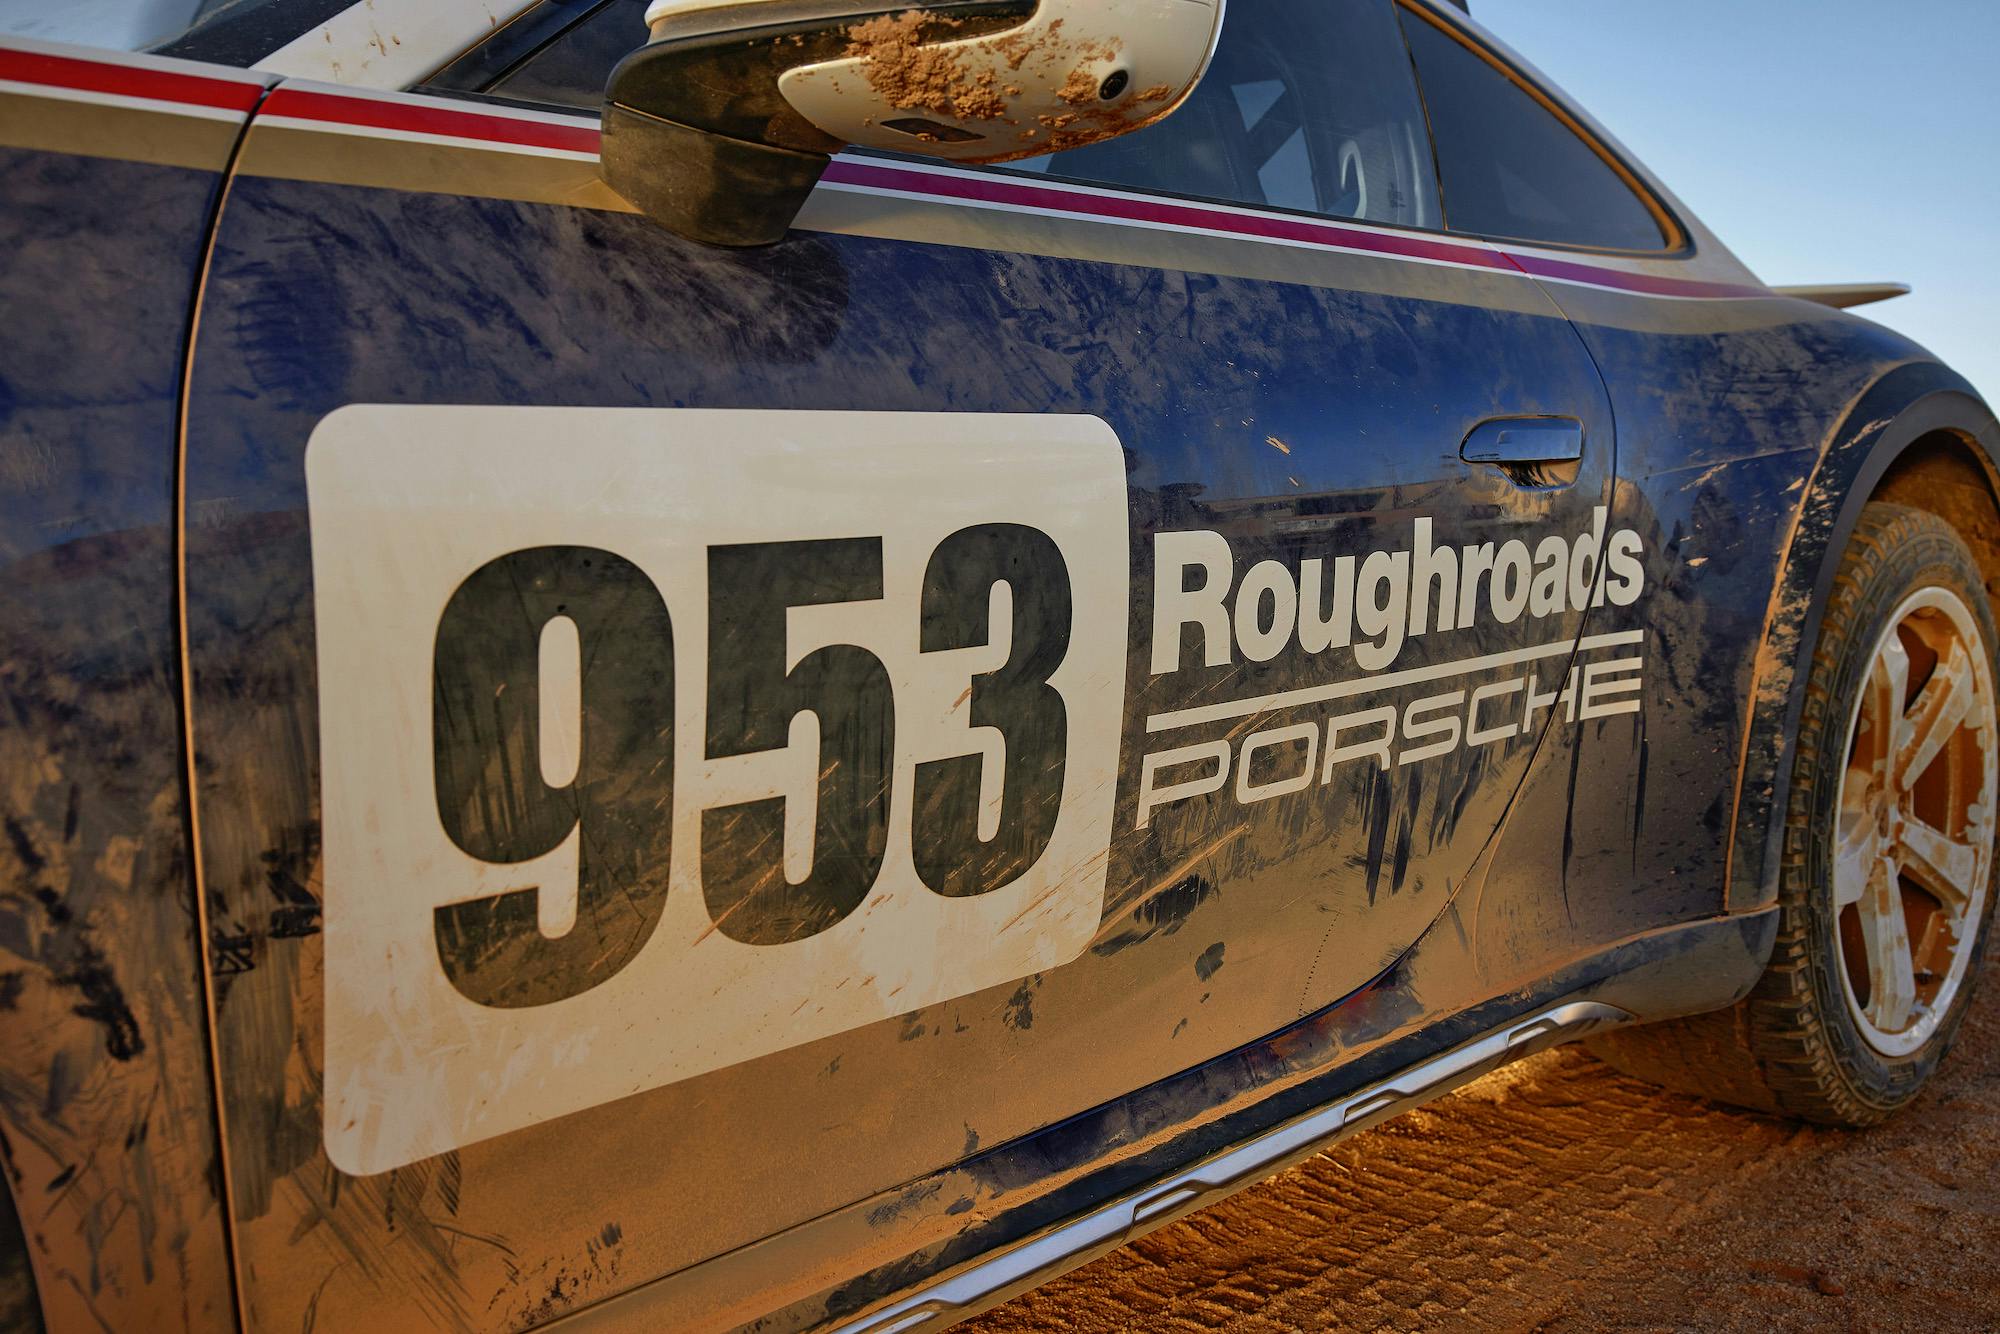 Porsche 911 Dakar Roughroads 953 side decals